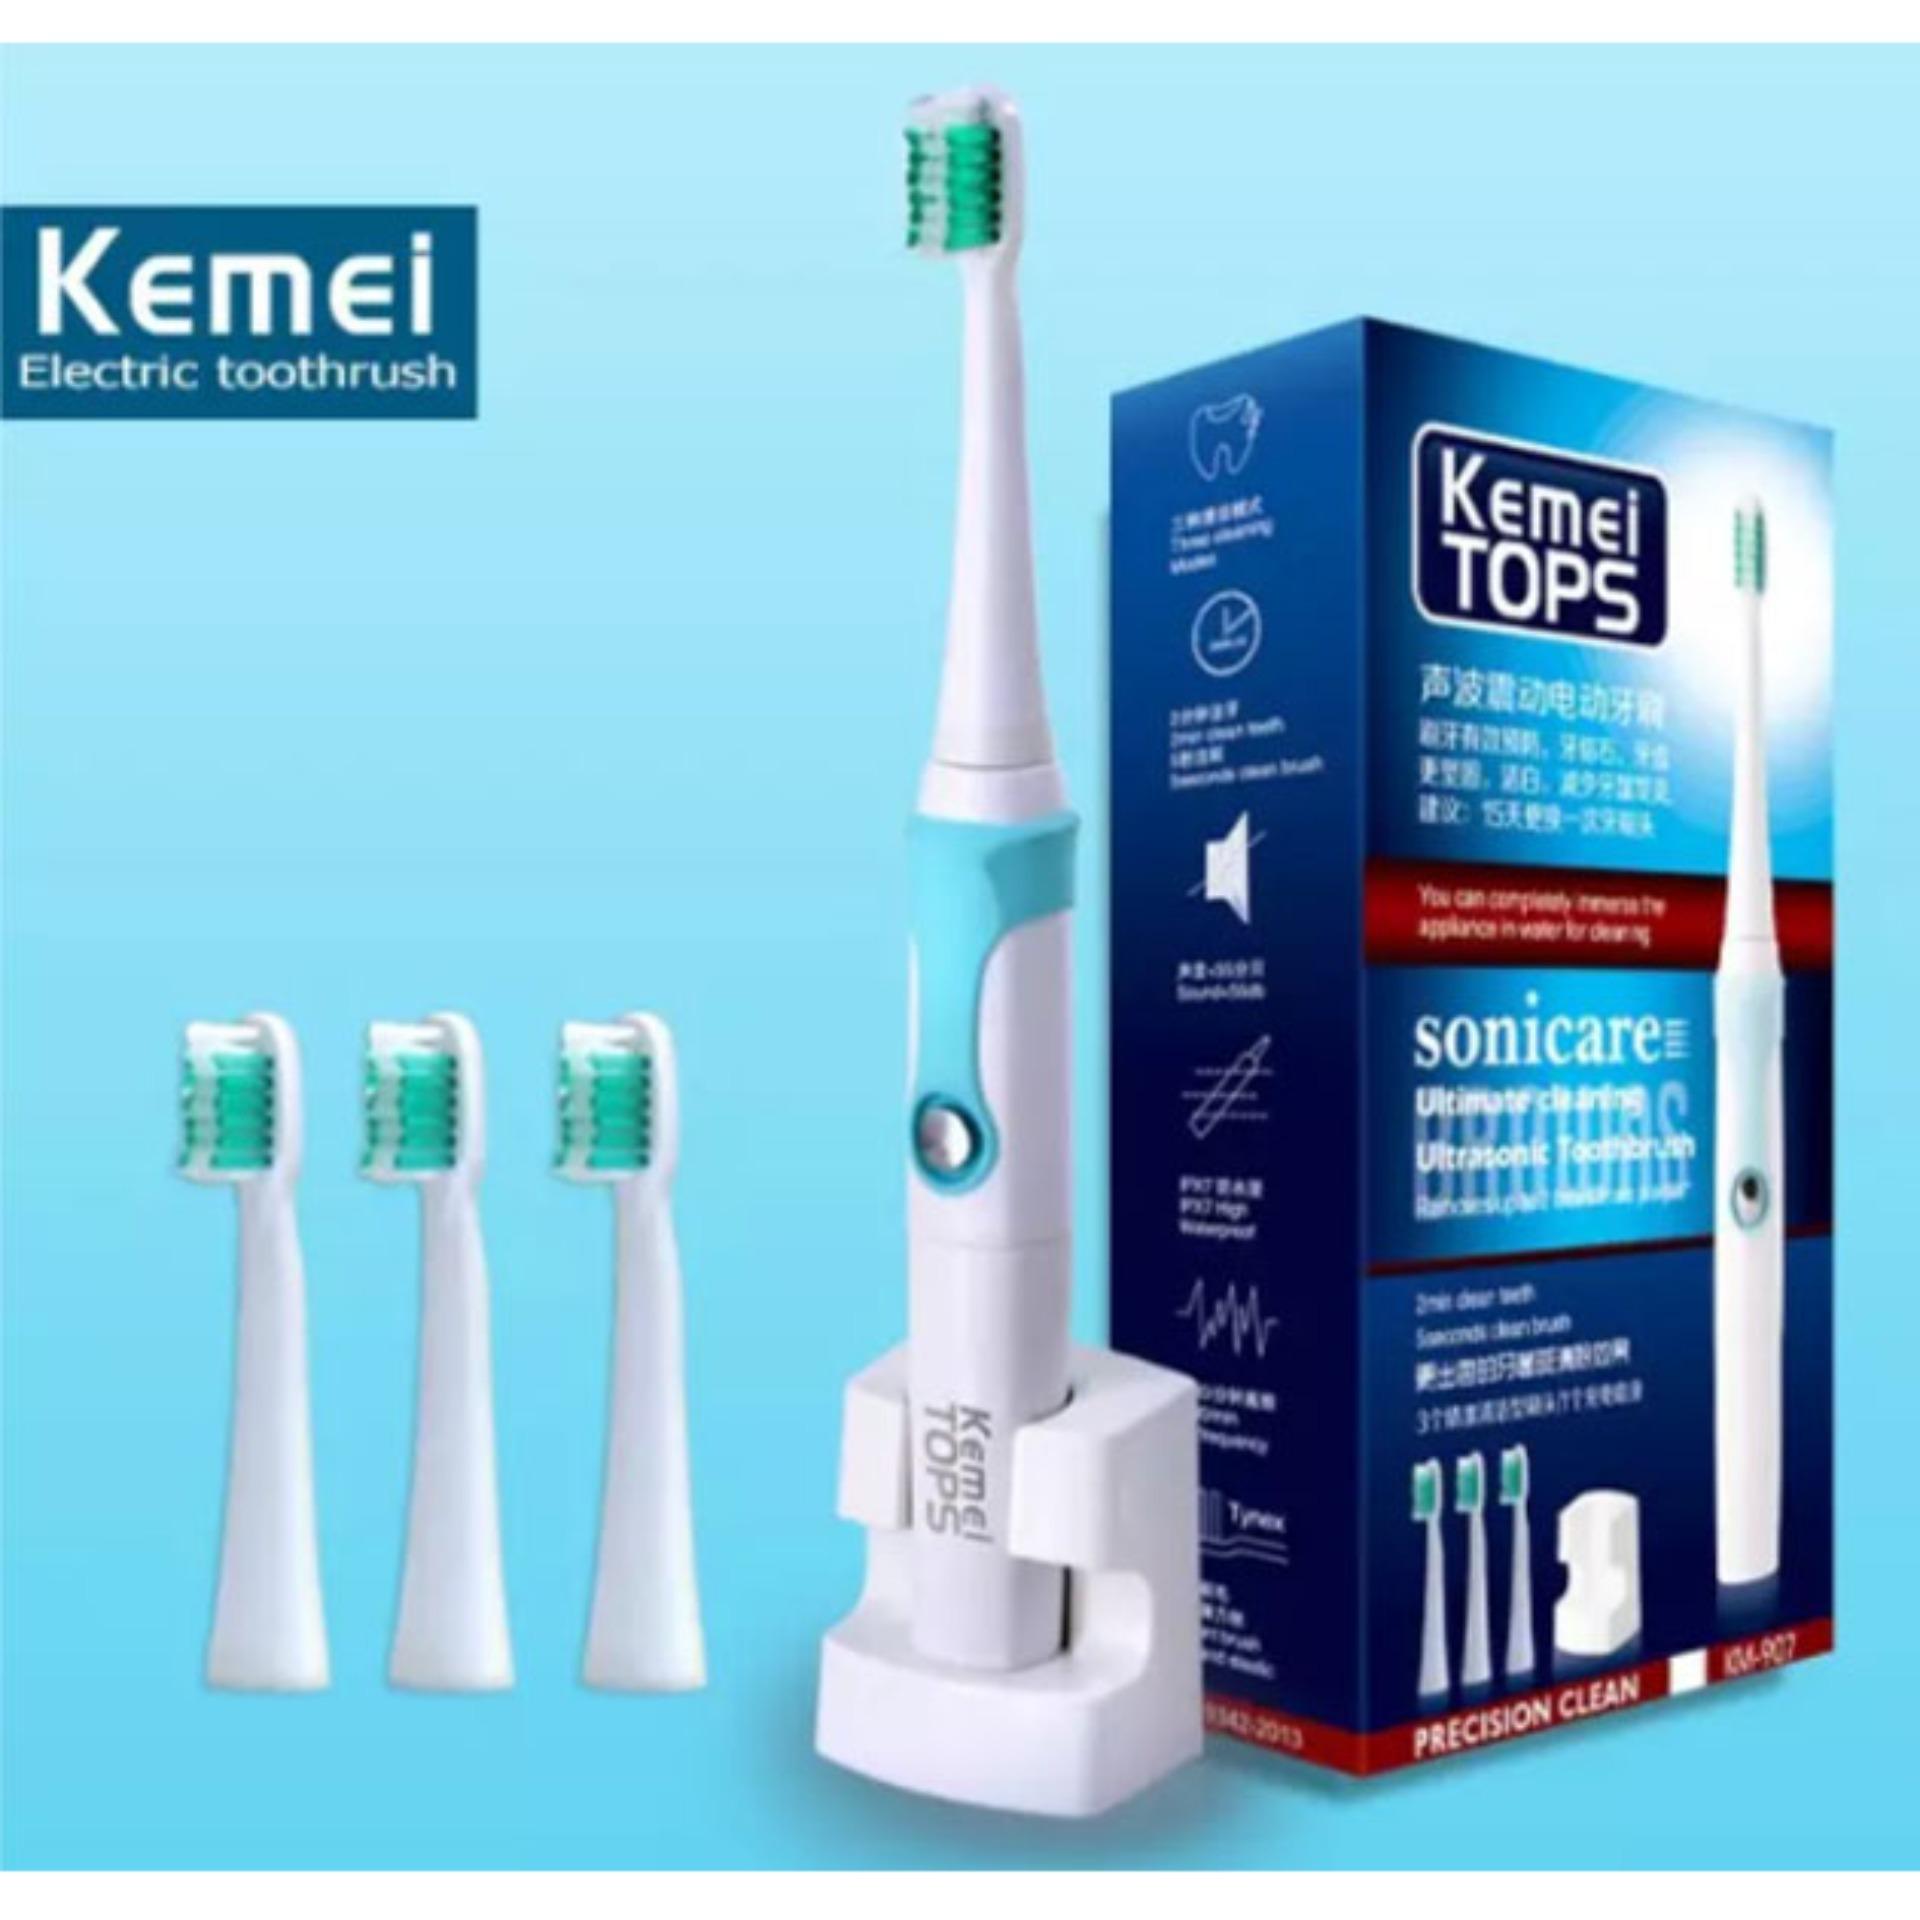 แปรงสีฟันไฟฟ้าเพื่อรอยยิ้มขาวสดใส ลำพูน Kemei TOPSแปรงสีฟันไฟฟ้าอุลตร้าโซนิค รุ่นKM 907